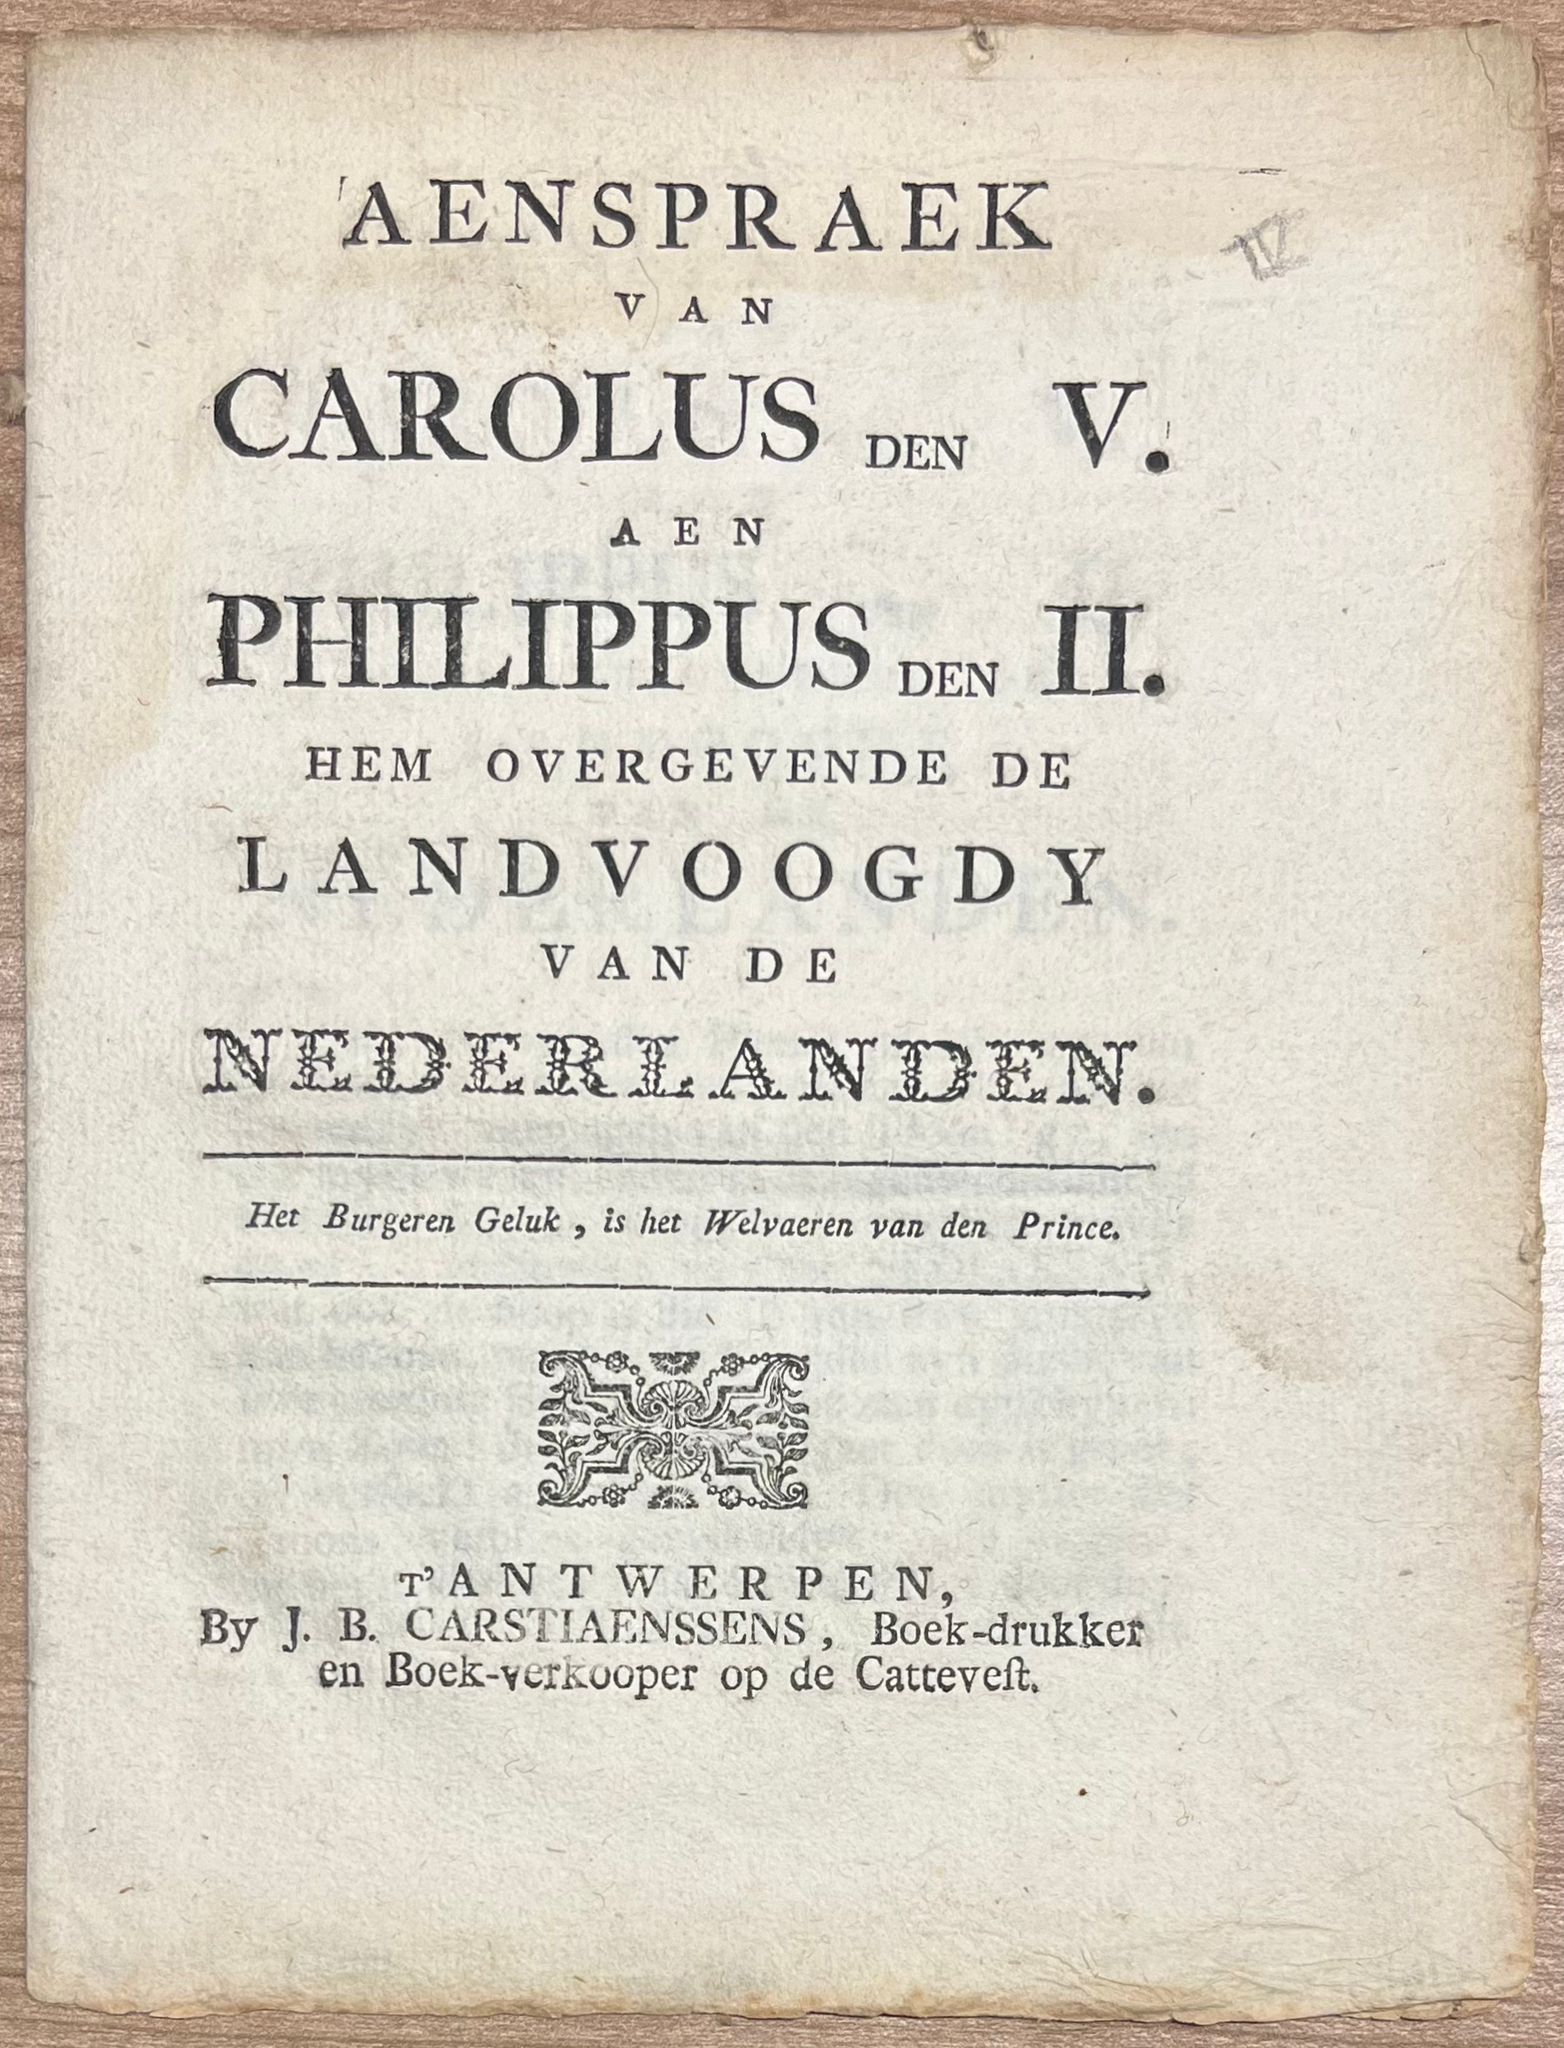  - Royalty, [s.d.], Philip II | Aenspraek van Carolus den V. aen Philippus den II. hem overgevende de Landvoogdy van de Nederlanden. T' Antwerpen, by J. B. Carstiaenssens, Boek-drukker en Boek-verkooper op de Cattevest, [s.d.], 11 pp.